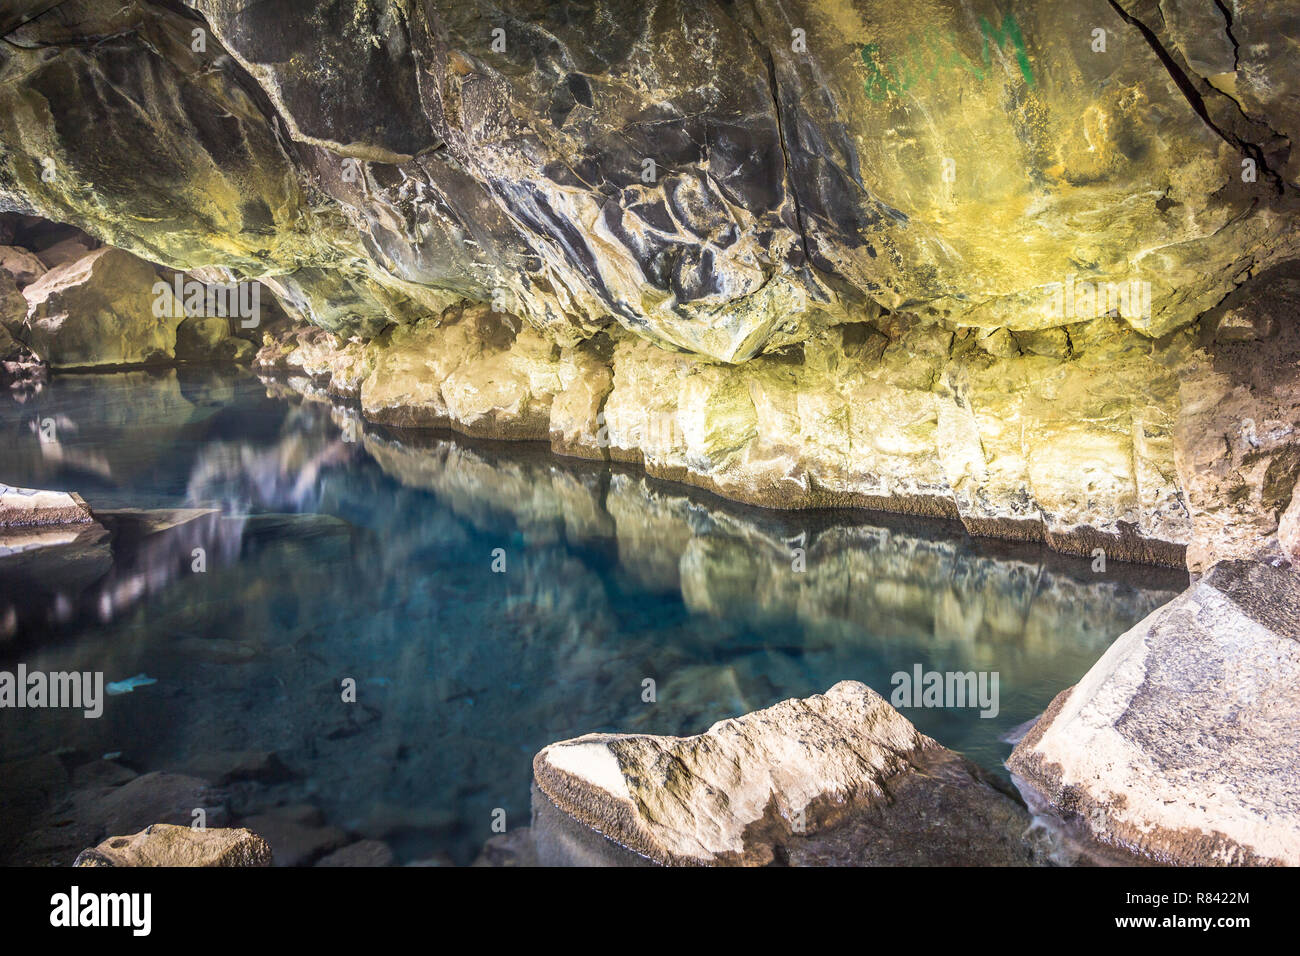 Grotte de Grotagja, eau chaude myvatn Islande Banque D'Images